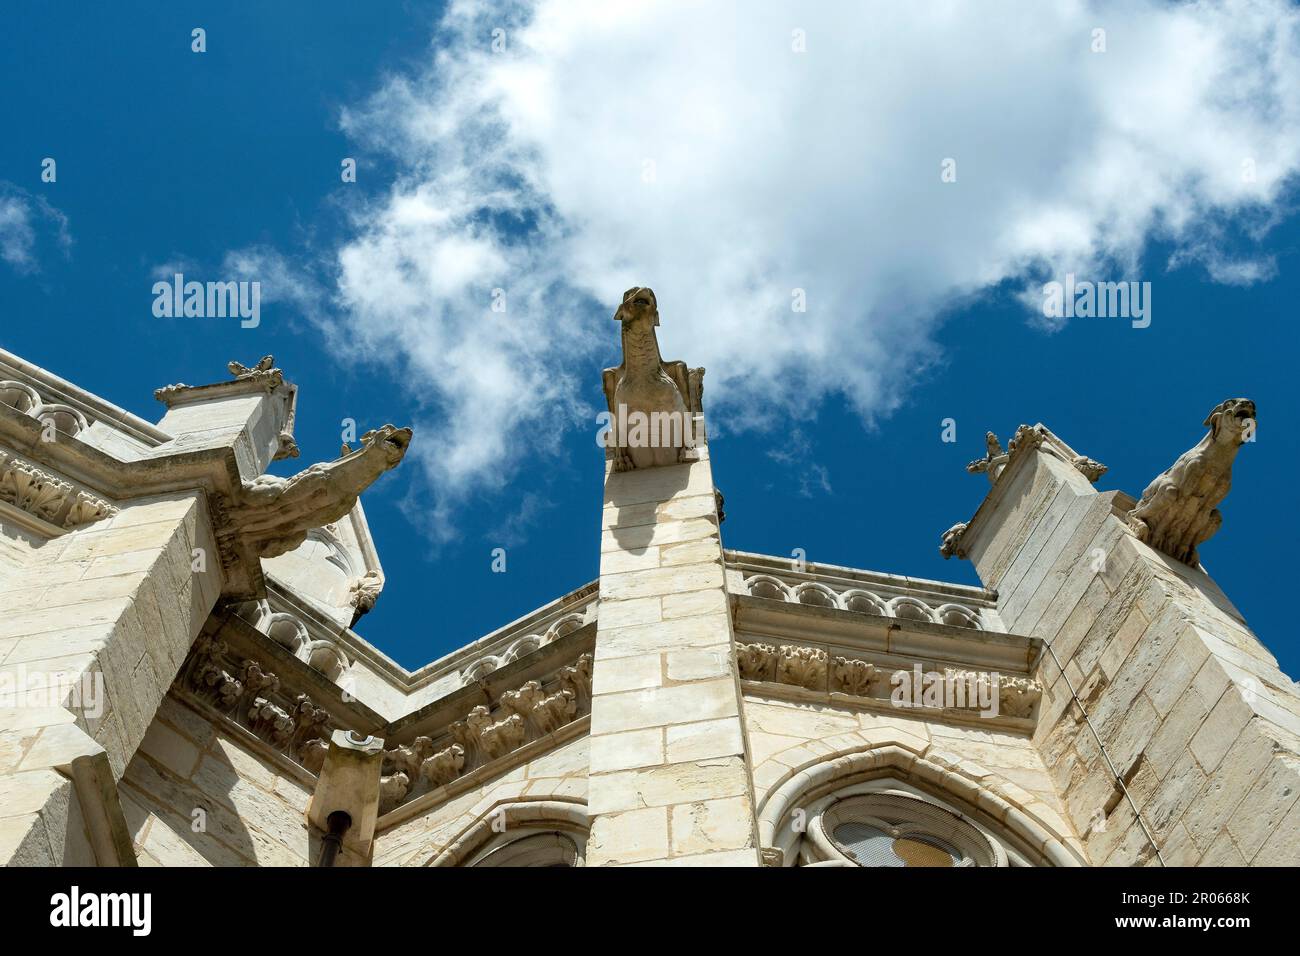 Nevers. Gargouilles de la cathédrale Saint Cyr et de Sainte-Julitte. Département de la Nièvre. Bourgogne Franche Comte. France Banque D'Images